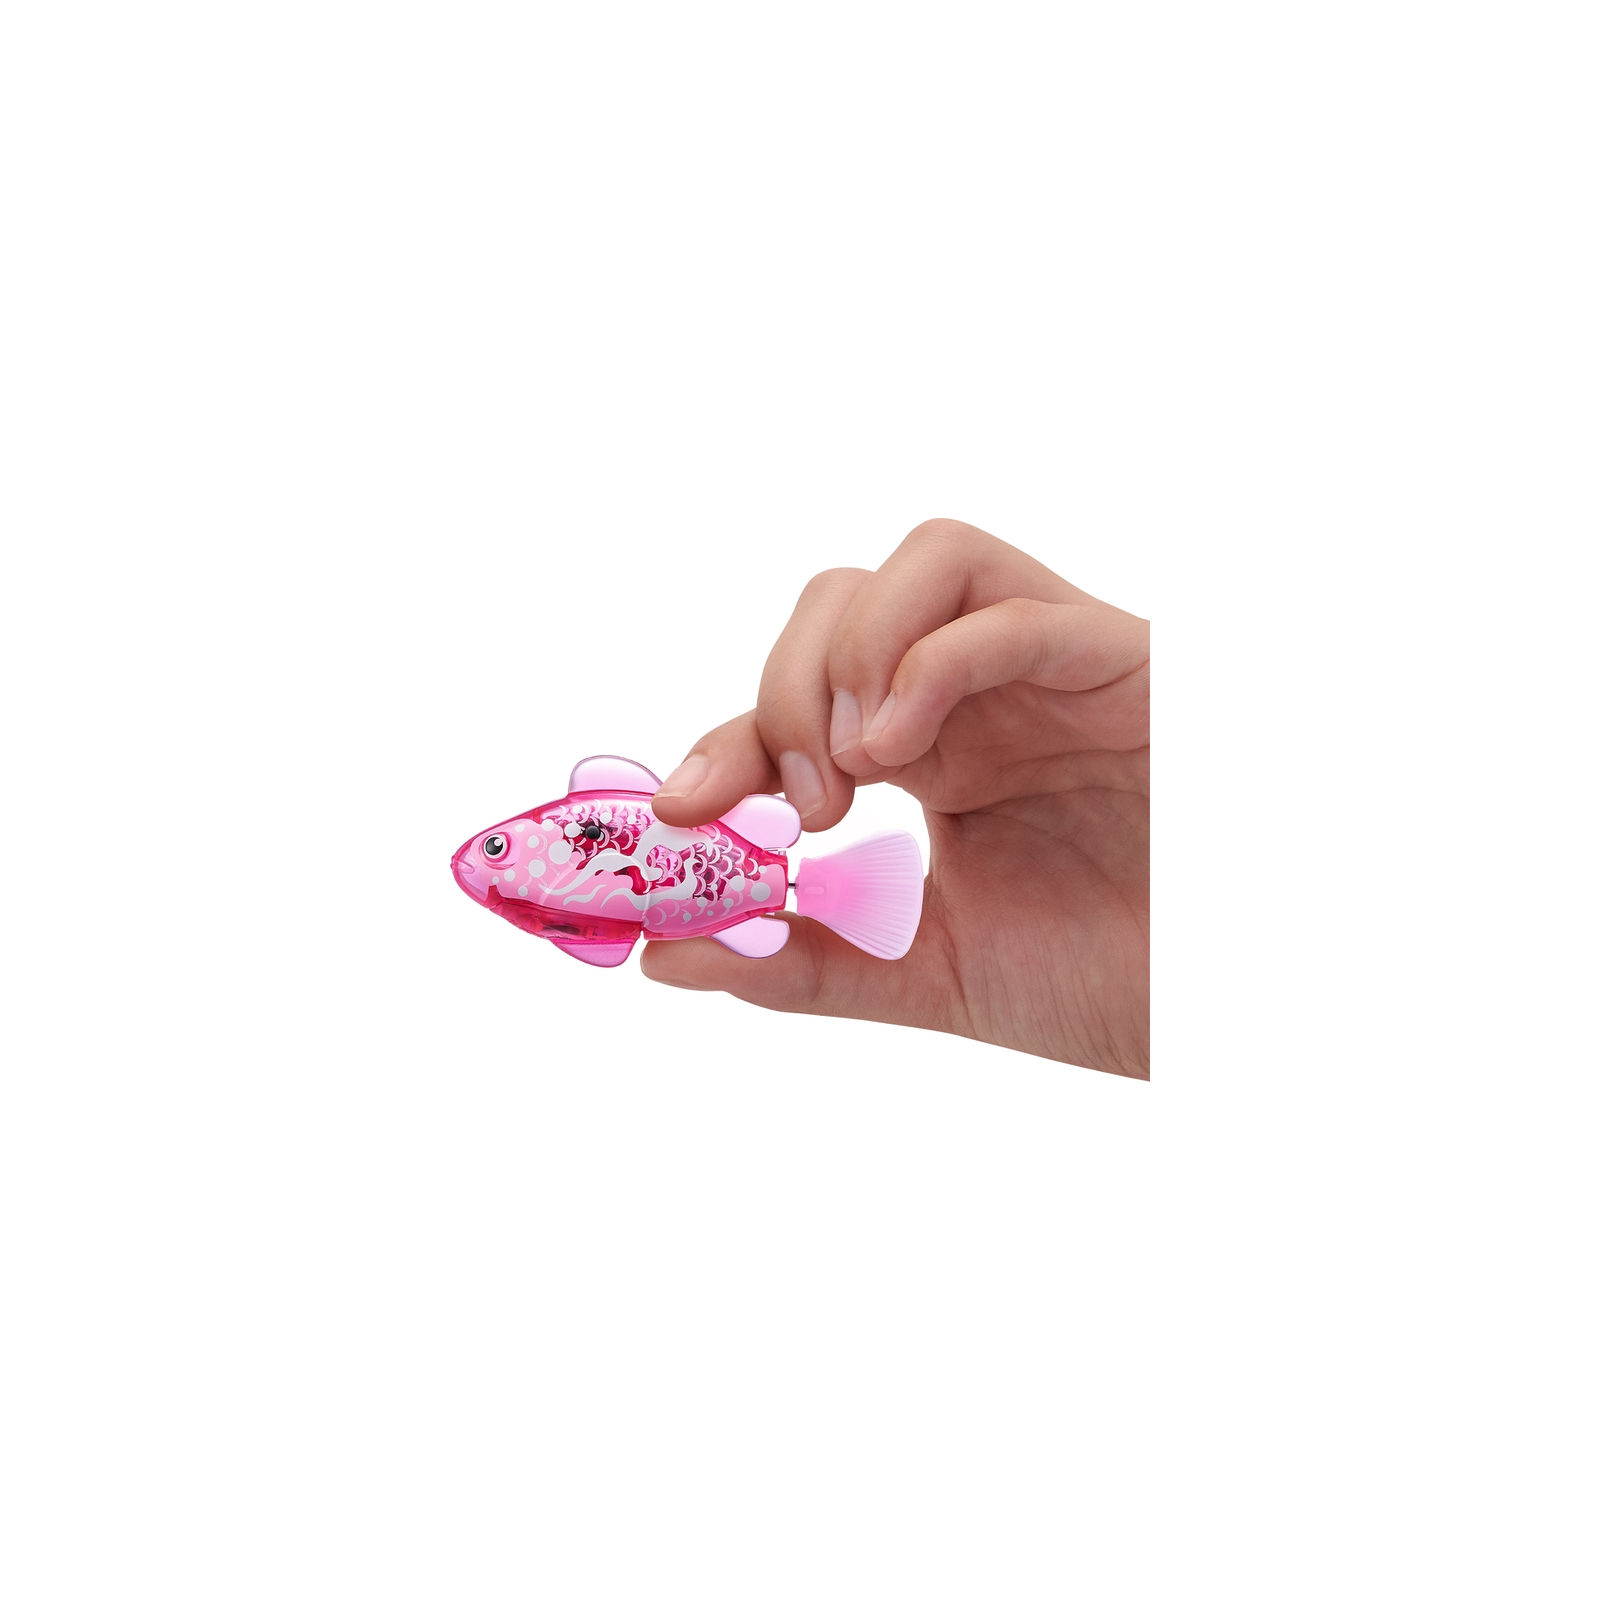 Интерактивная игрушка Pets & Robo Alive S3 - Роборыбка (розовая) (7191-6) изображение 4